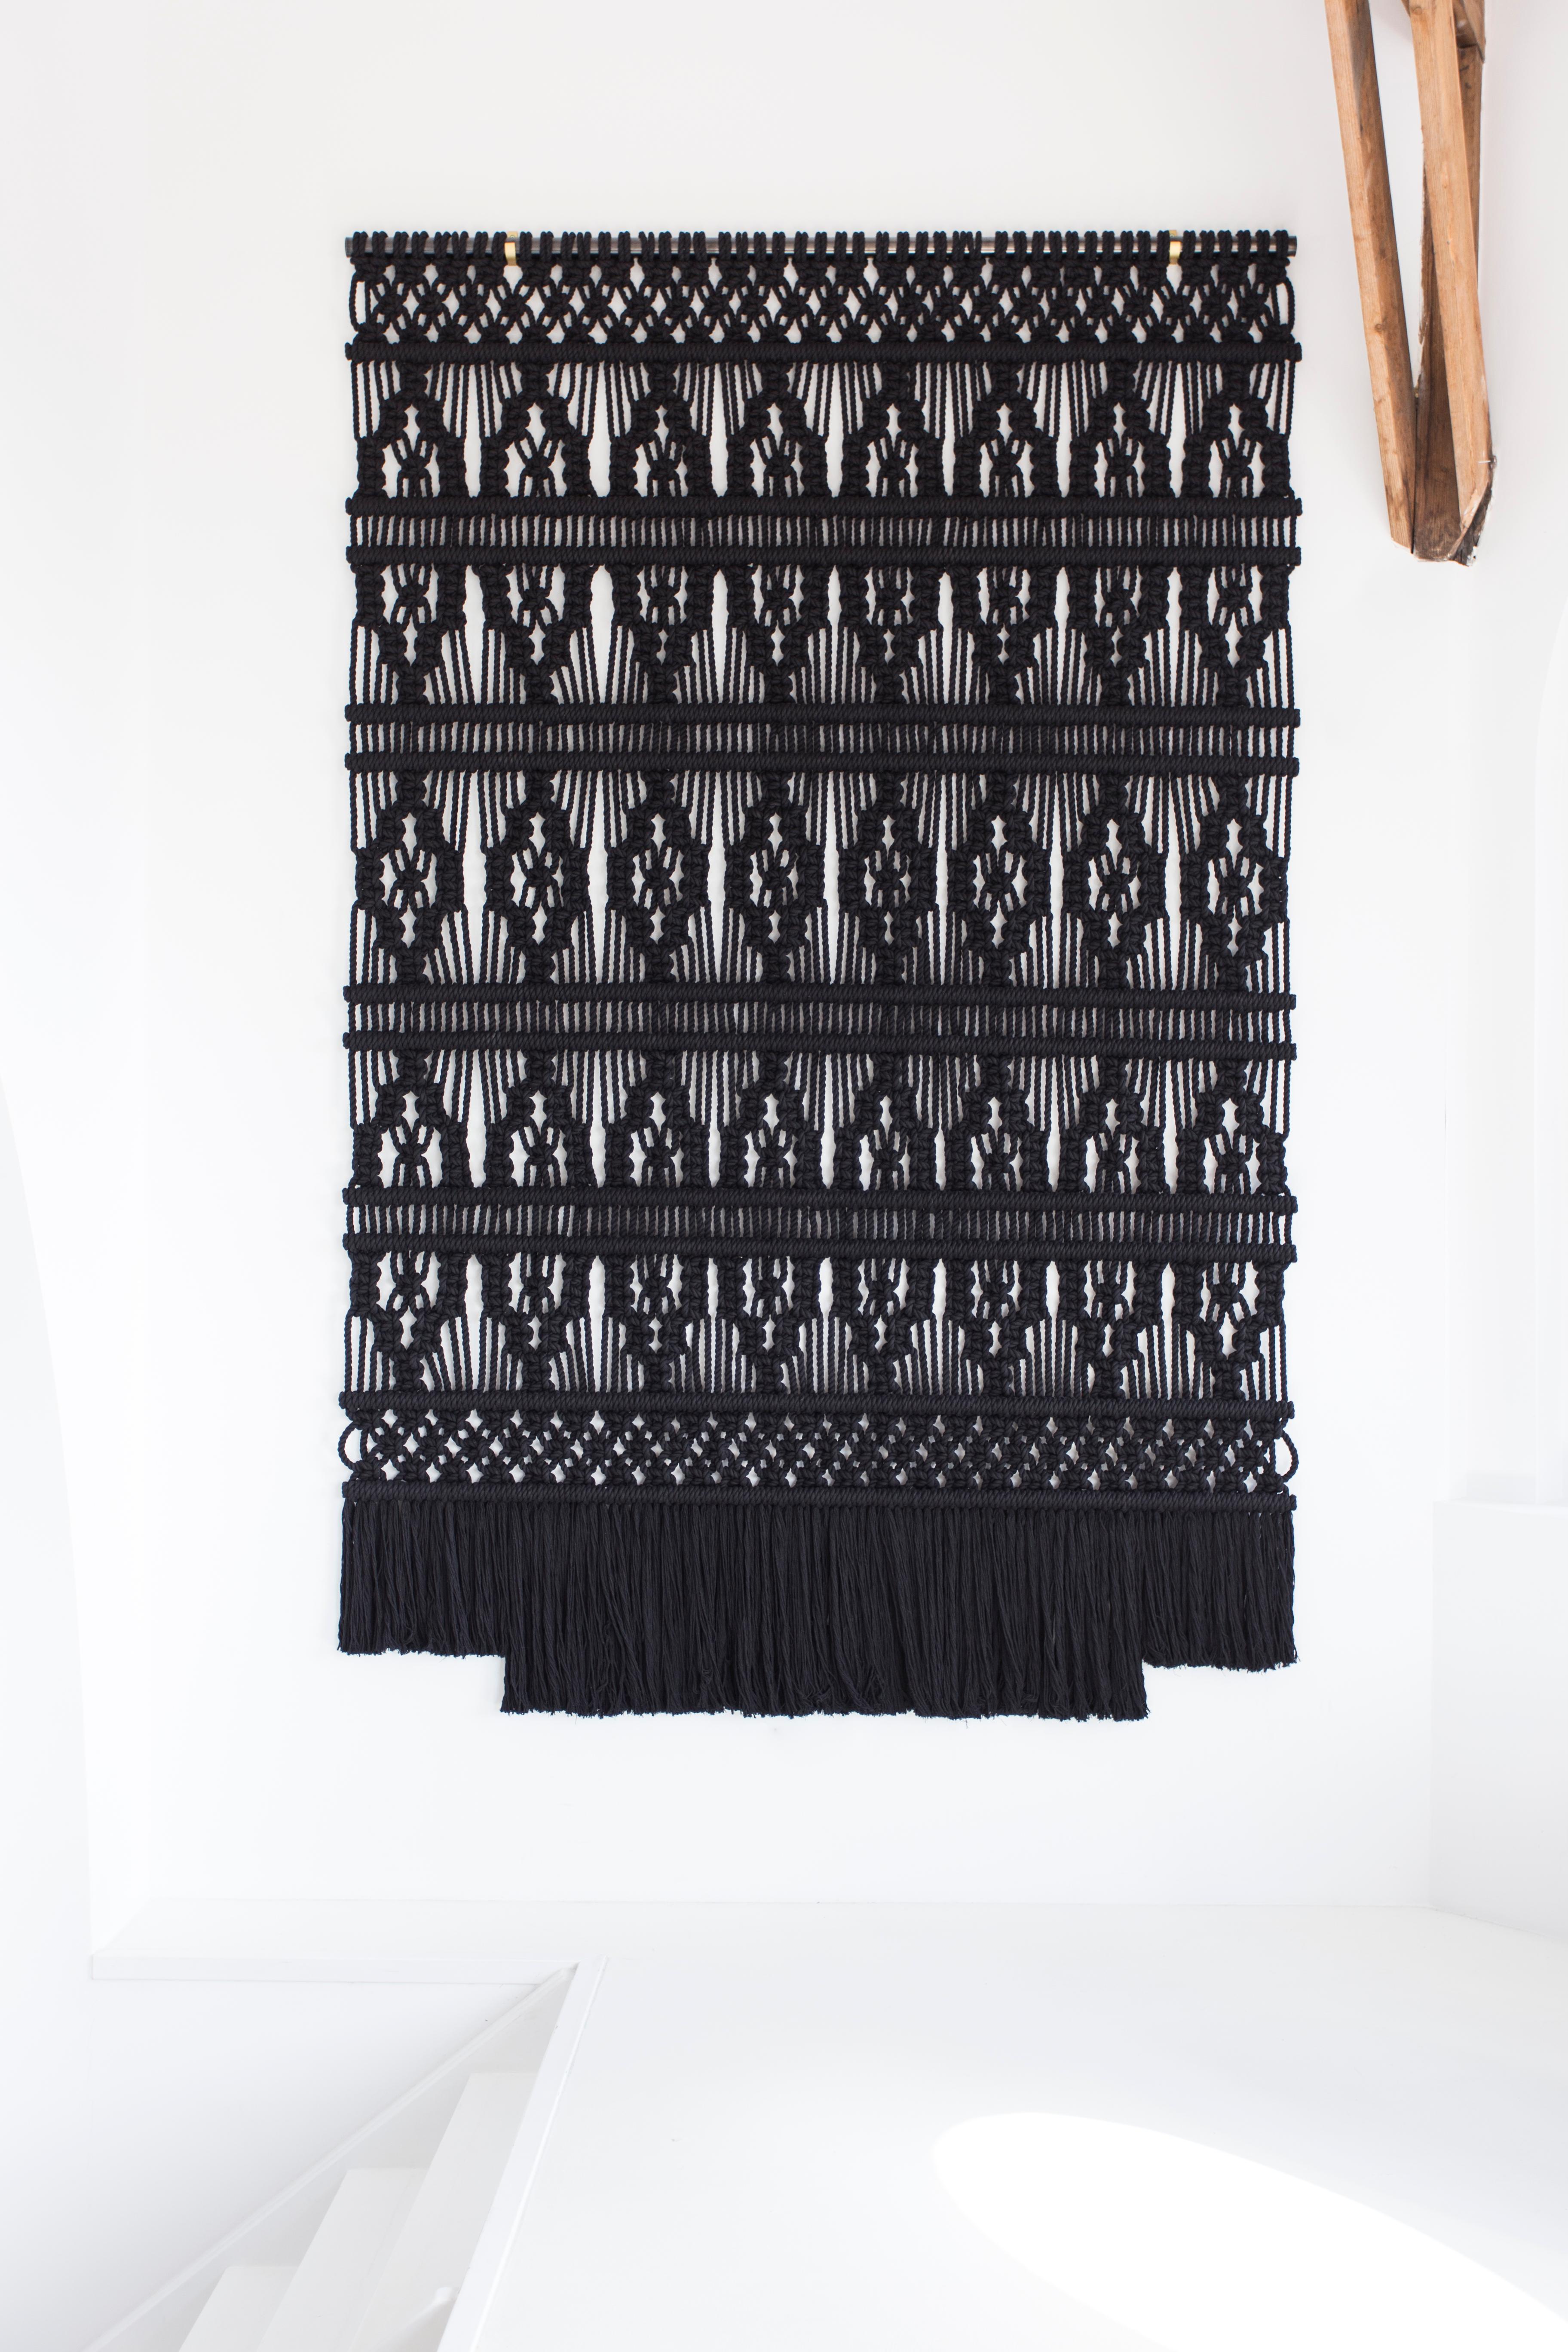 wool couture deep love macrame wall hanging diy macrame kit